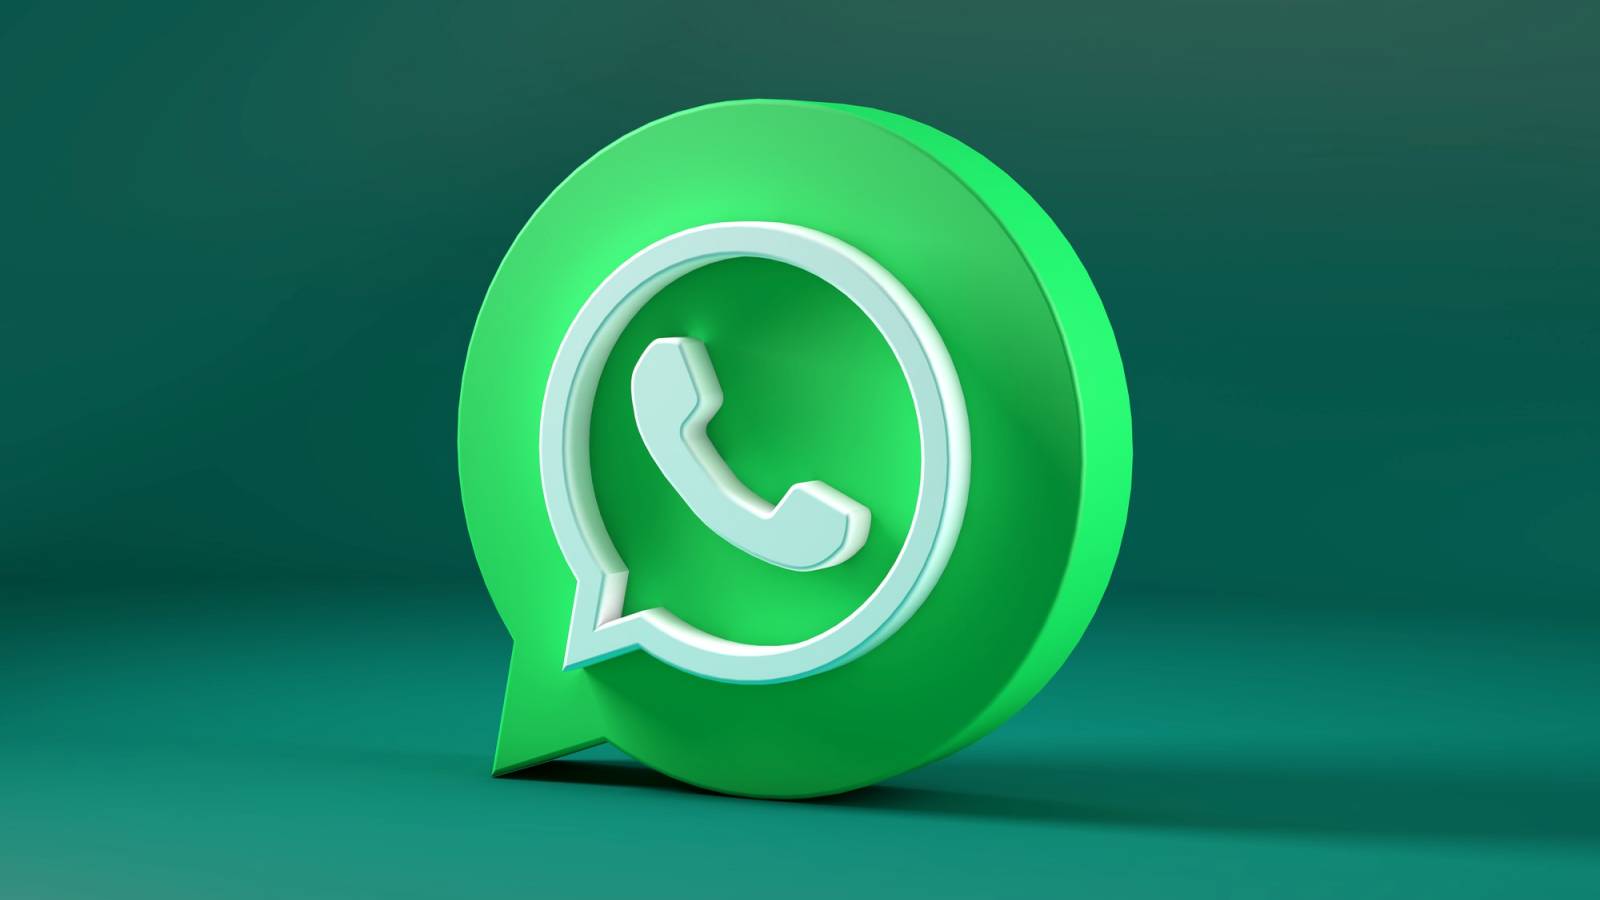 WhatsApp Facut SECRET Schimbare Majora Aplicatia Dezvoltata iPhone